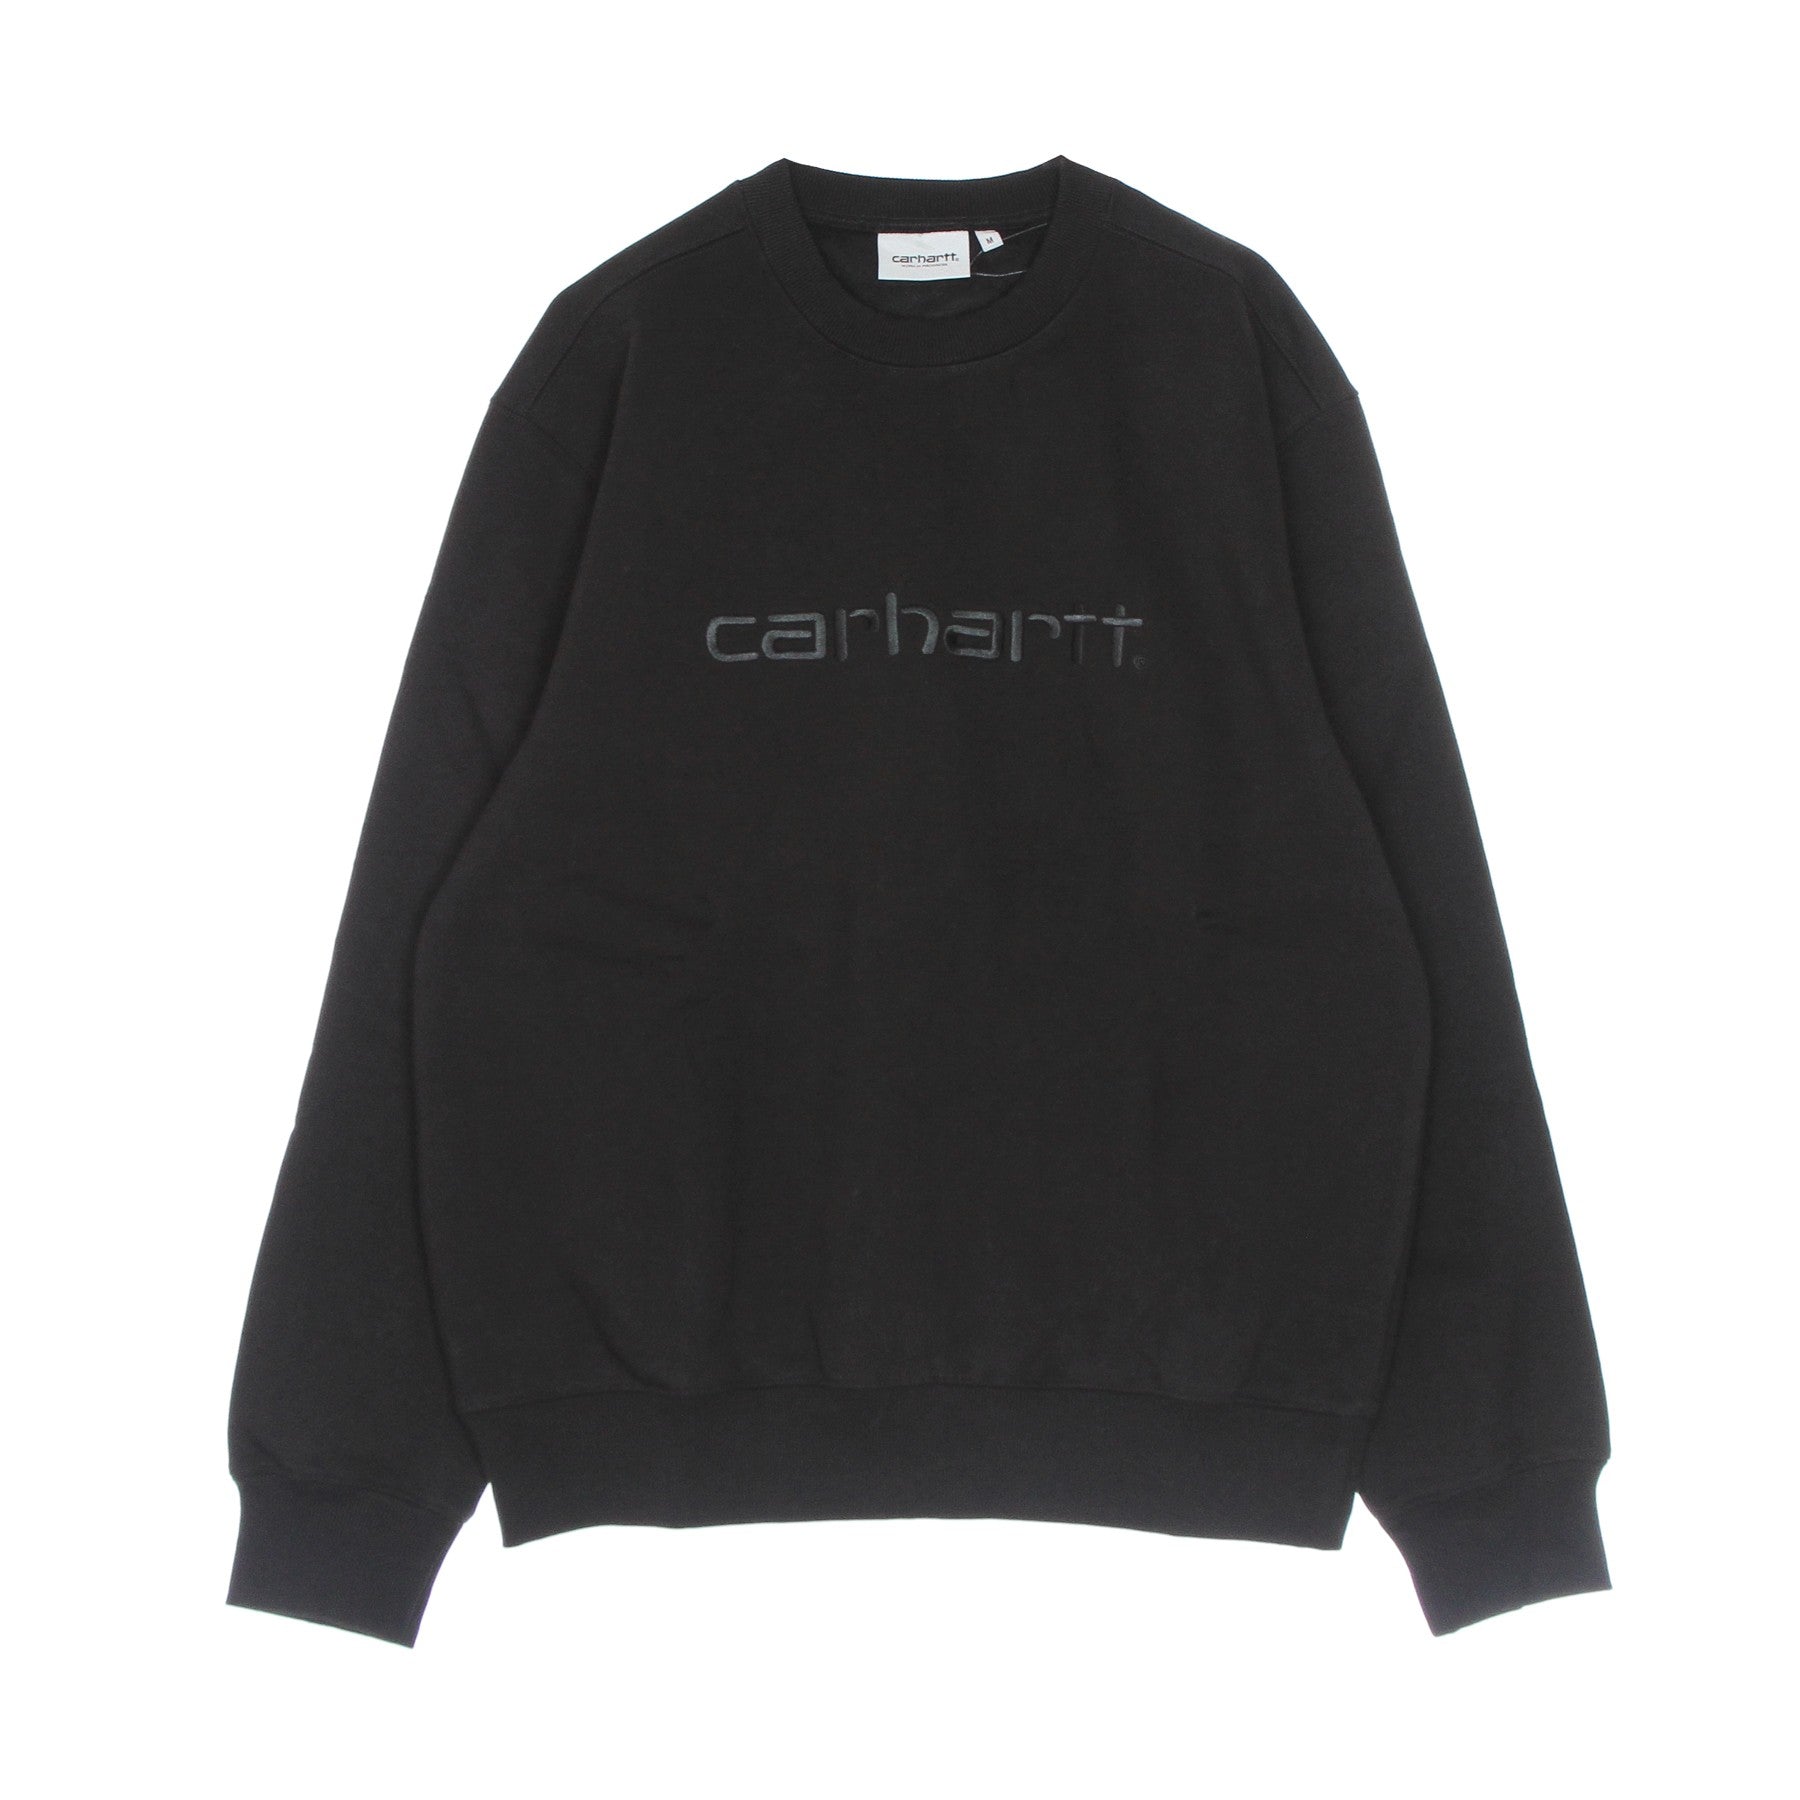 Carhartt Sweat Men's Crewneck Sweatshirt Black/black